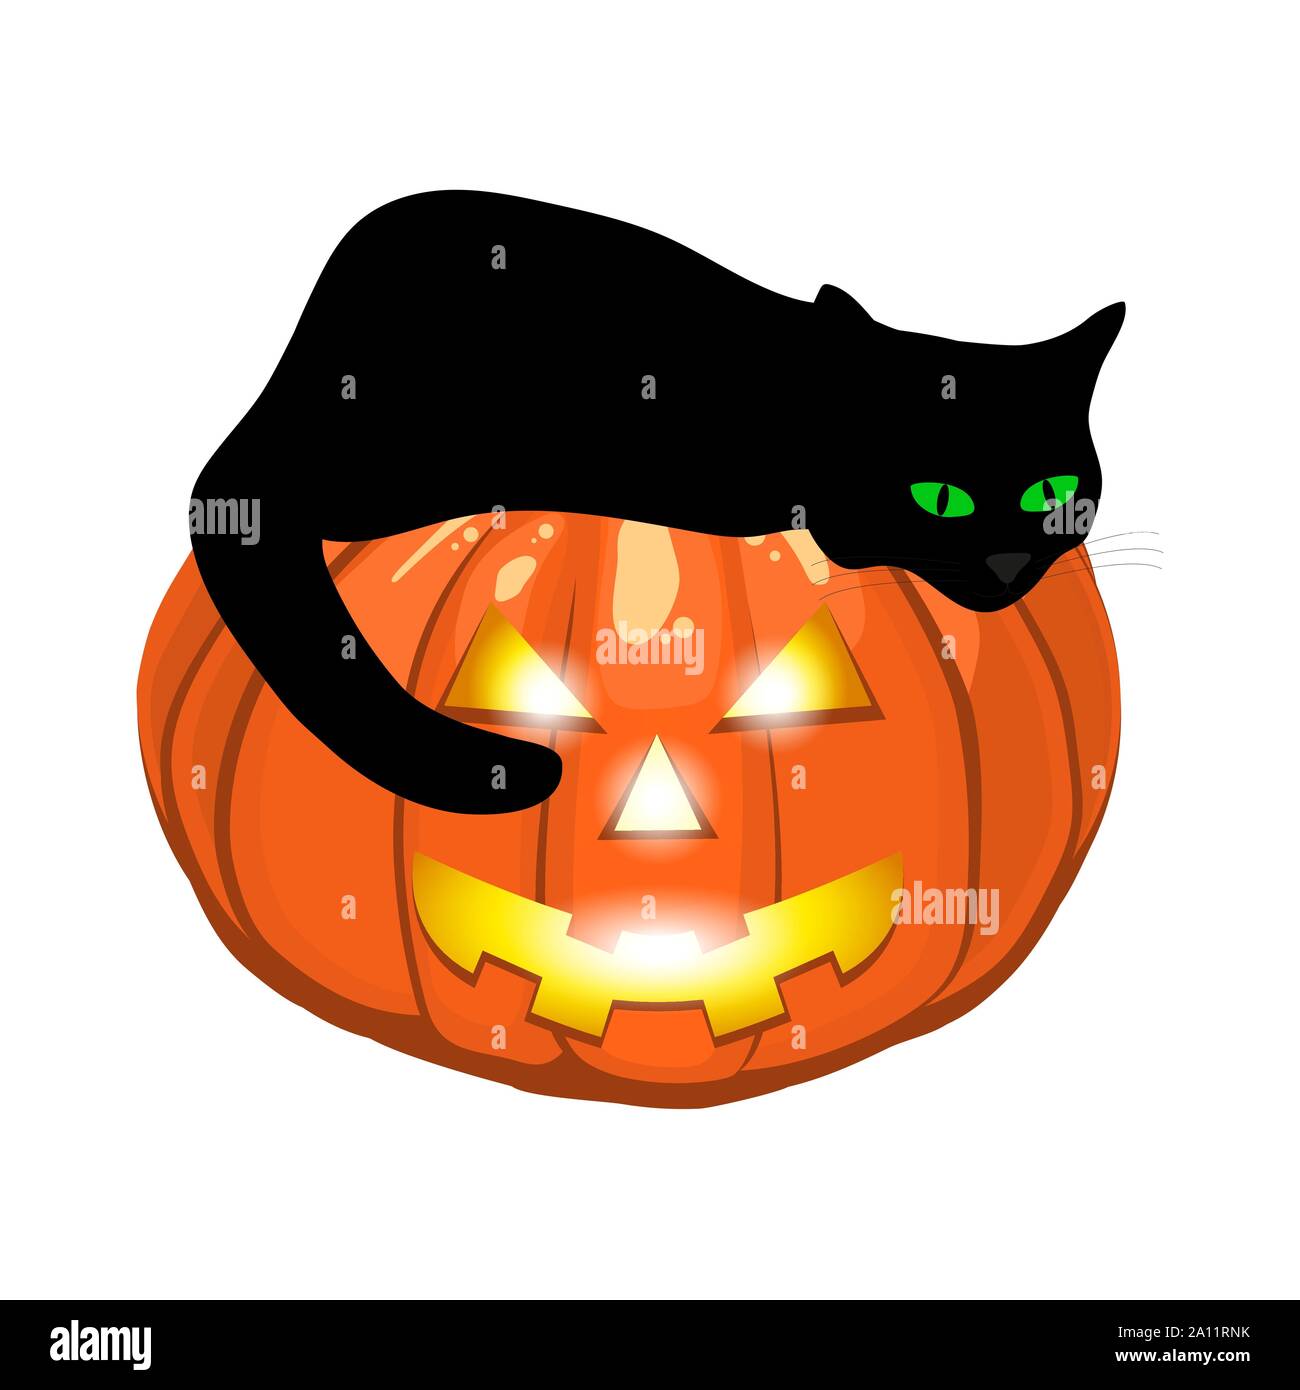 Black cat lies on an evil pumpkin jack lantern for halloween Stock Vector